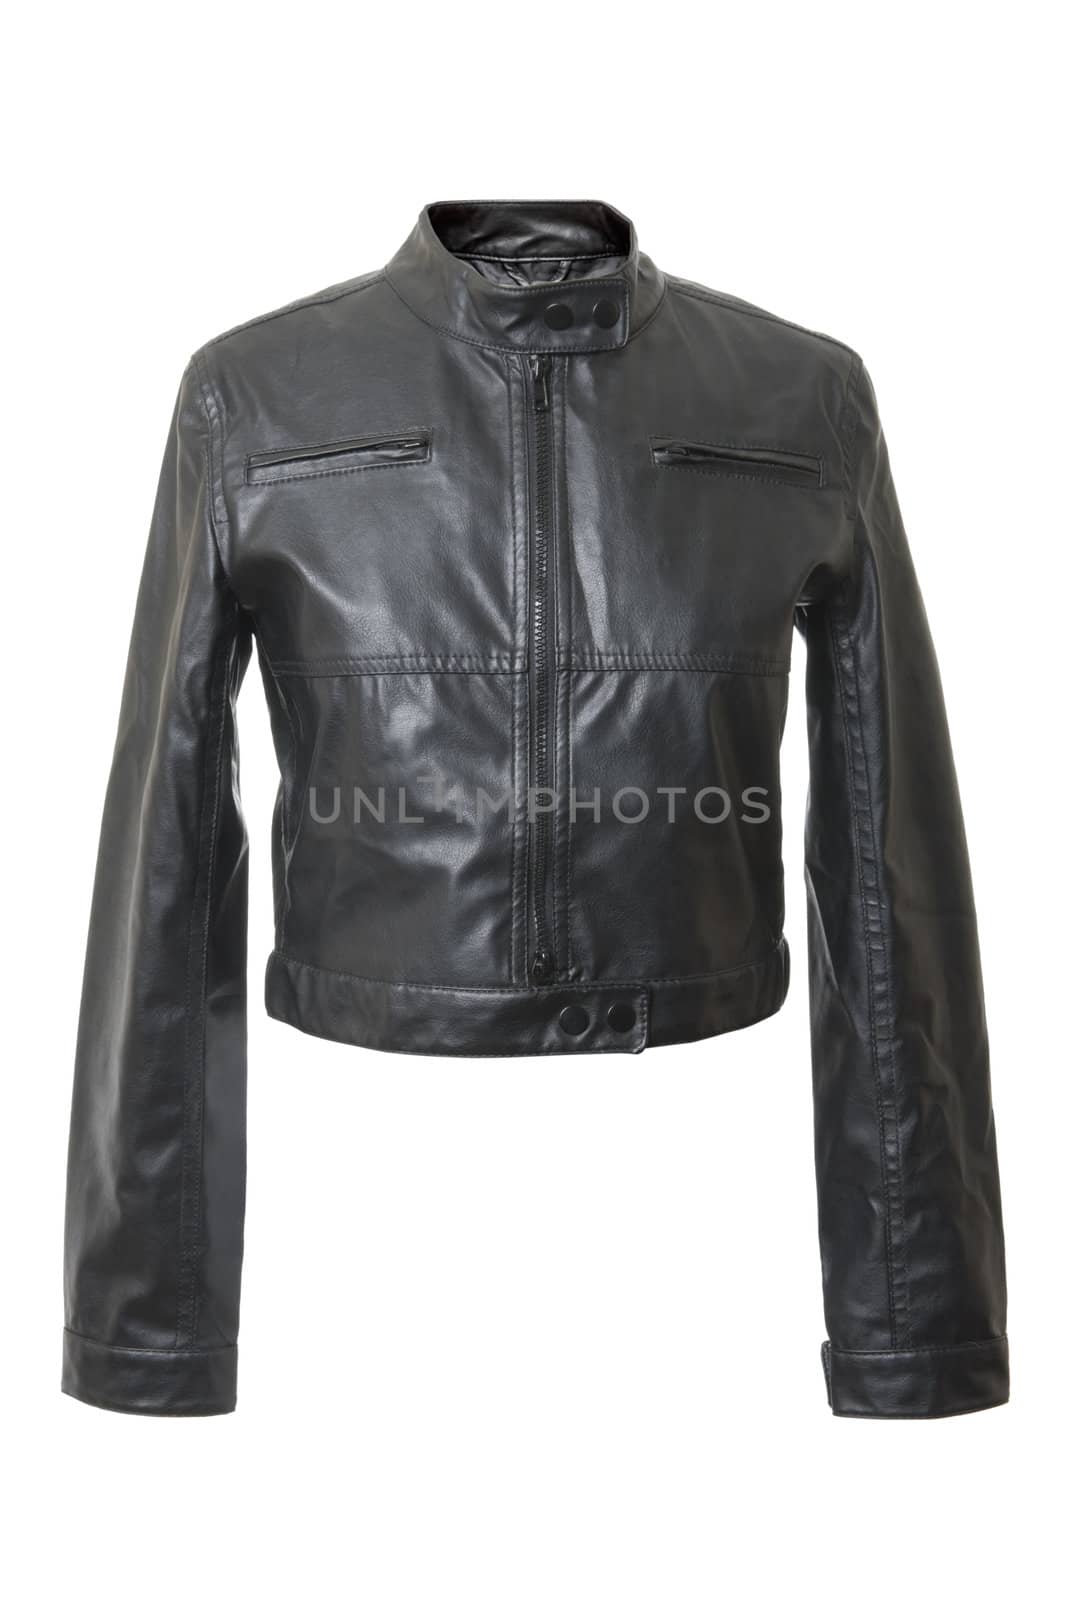 Black and short female leather jacket. Isolated on white background